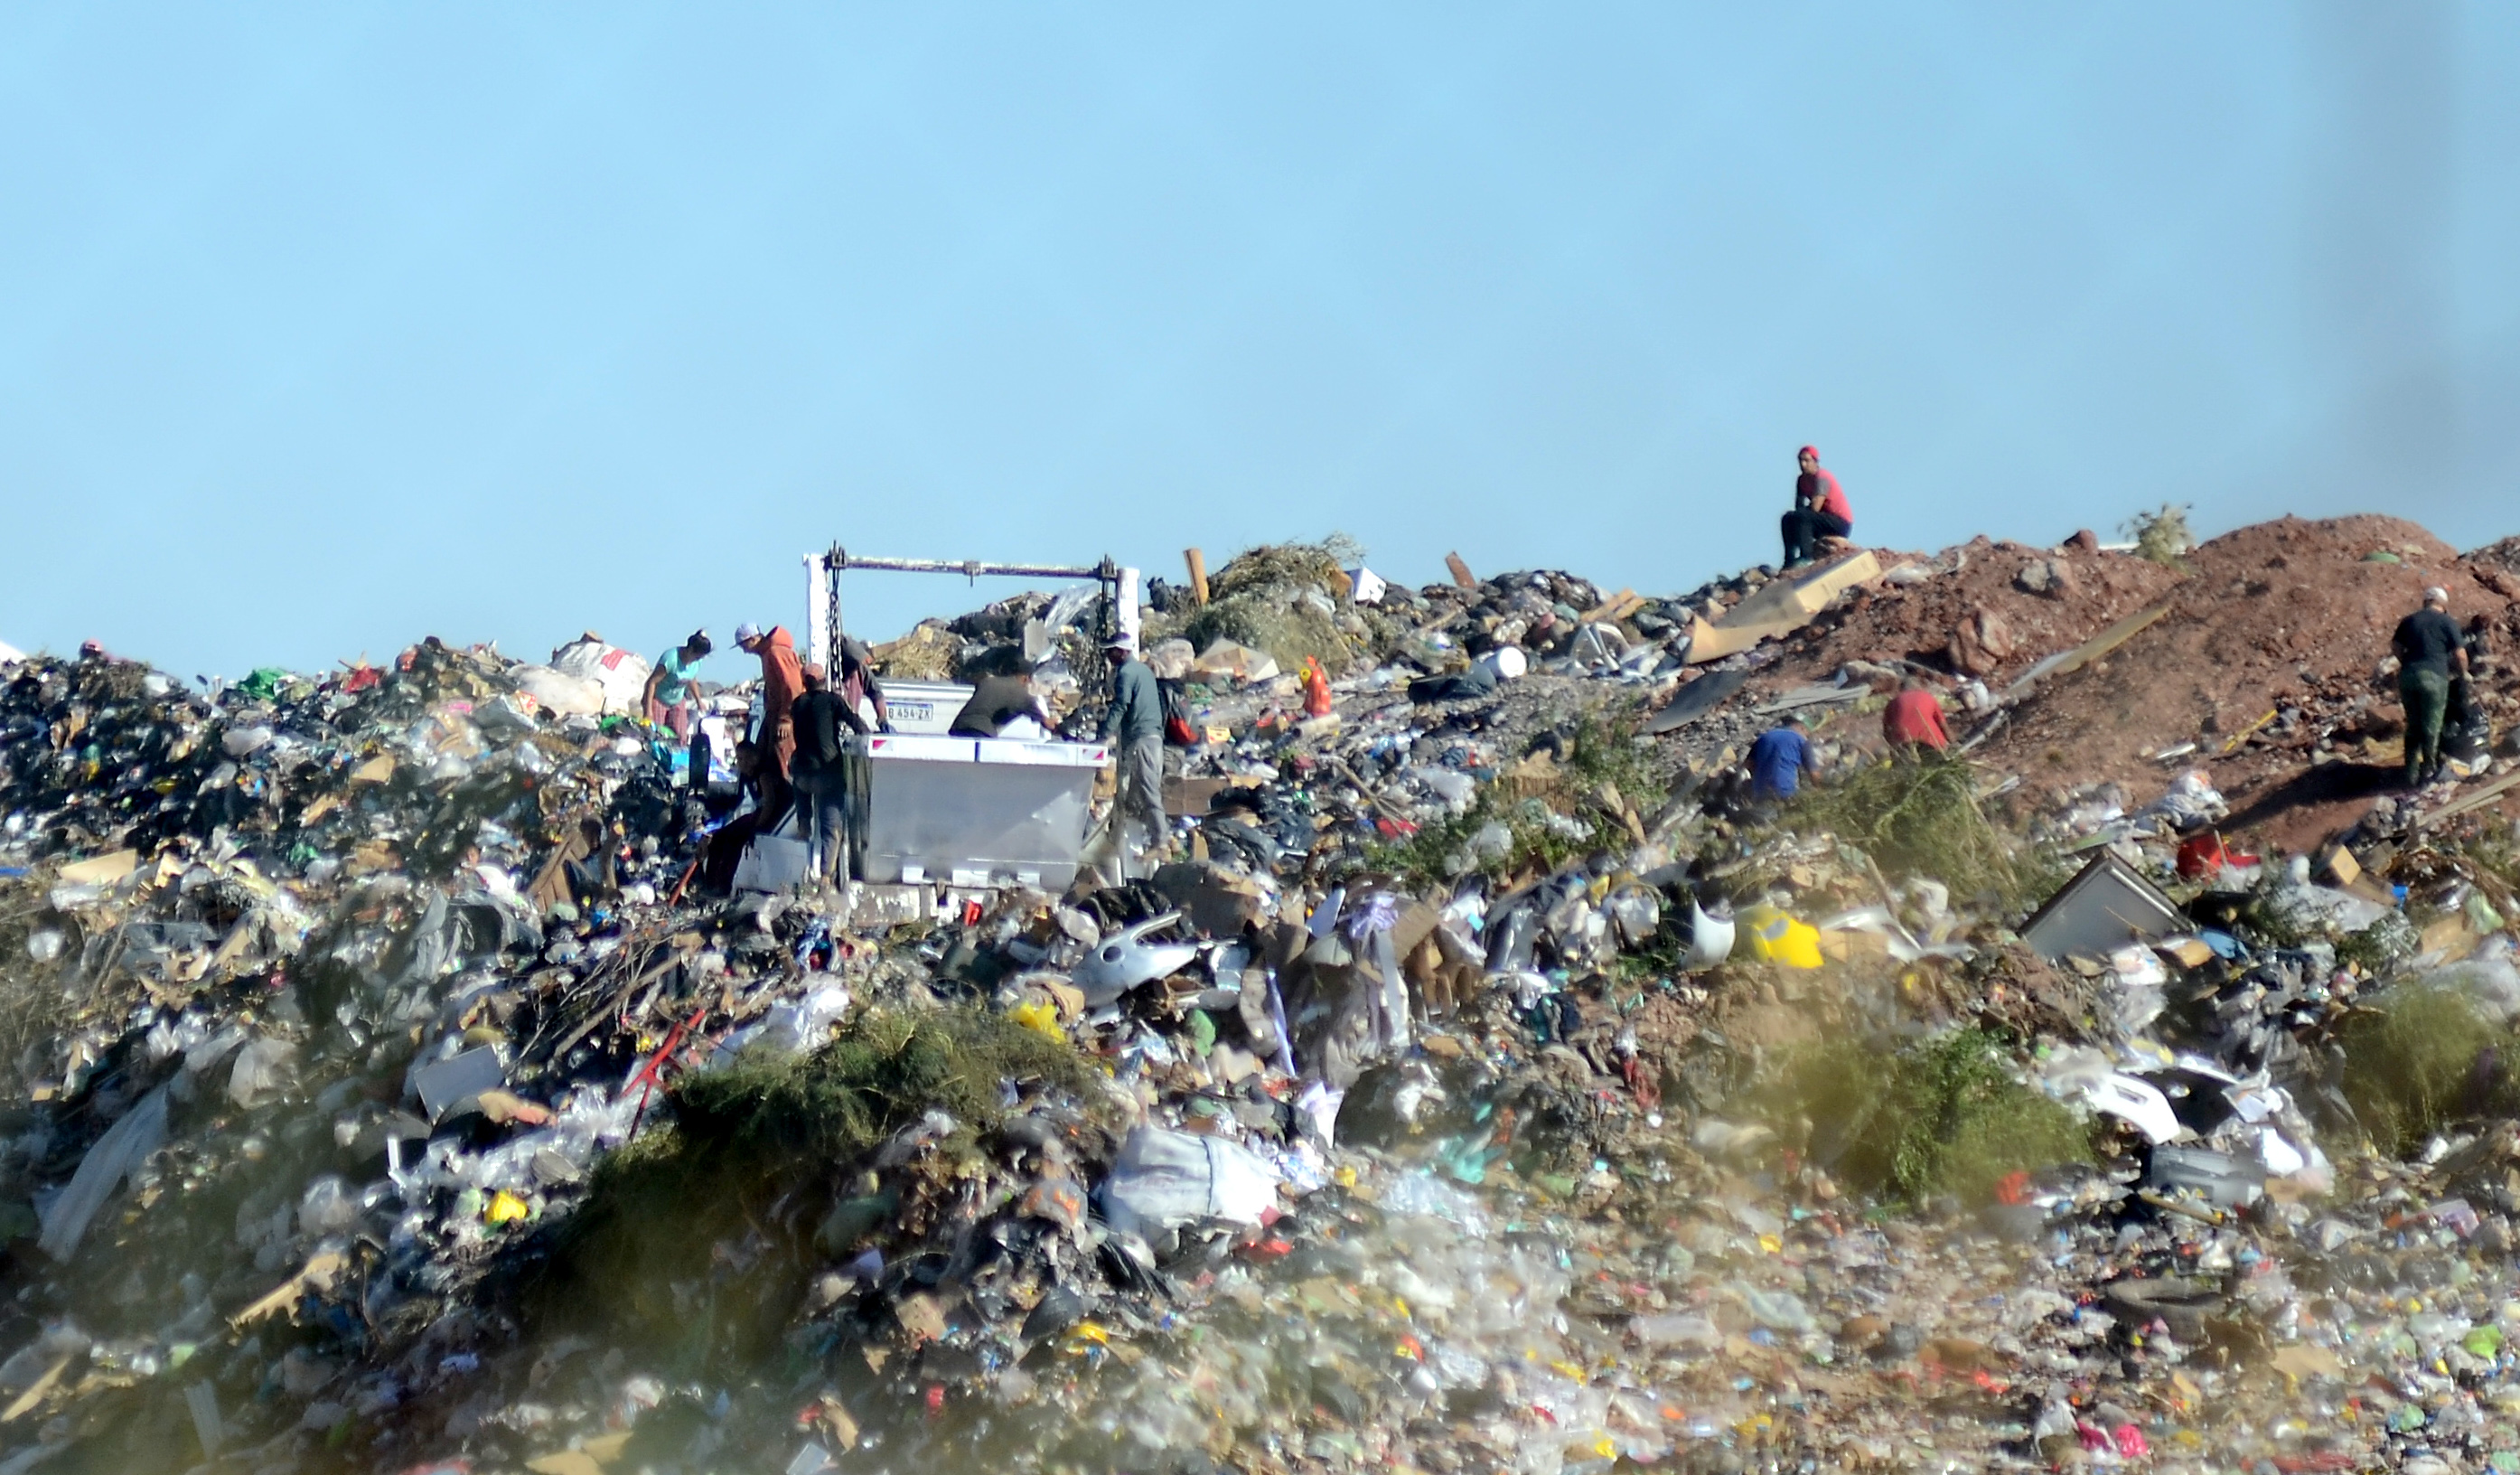 Un camión de basura atropelló a un adolescente mientras buscaba comida en el basural de la meseta, en Neuquén. (Foto: Mauro Perez)